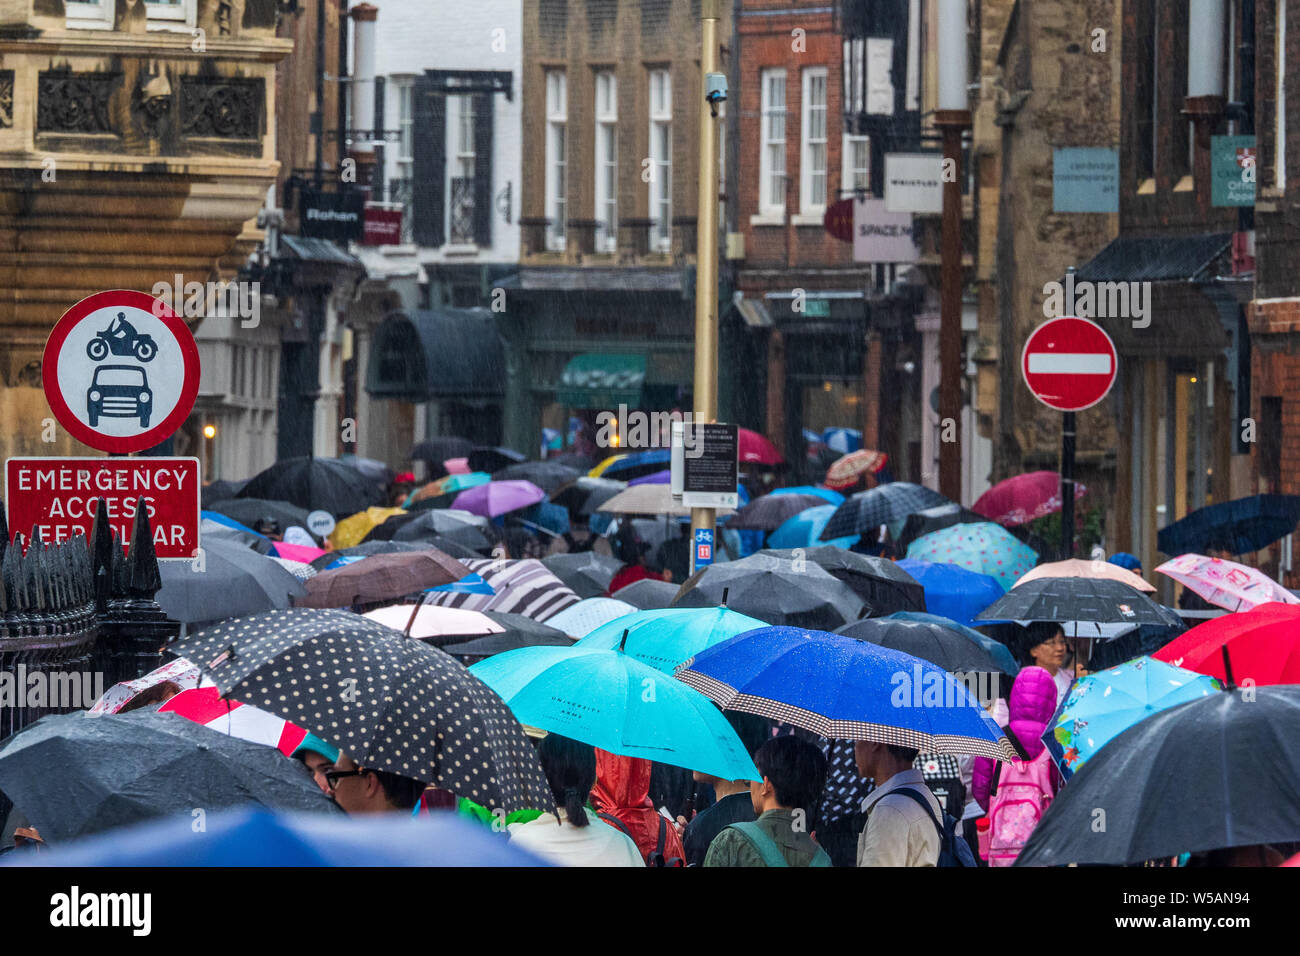 Les touristes à Cambridge Summer Rain - les rues de Cambridge UK sont thonged avec les touristes et les acheteurs de parapluies lors de fortes pluies après une longue période de sécheresse Banque D'Images